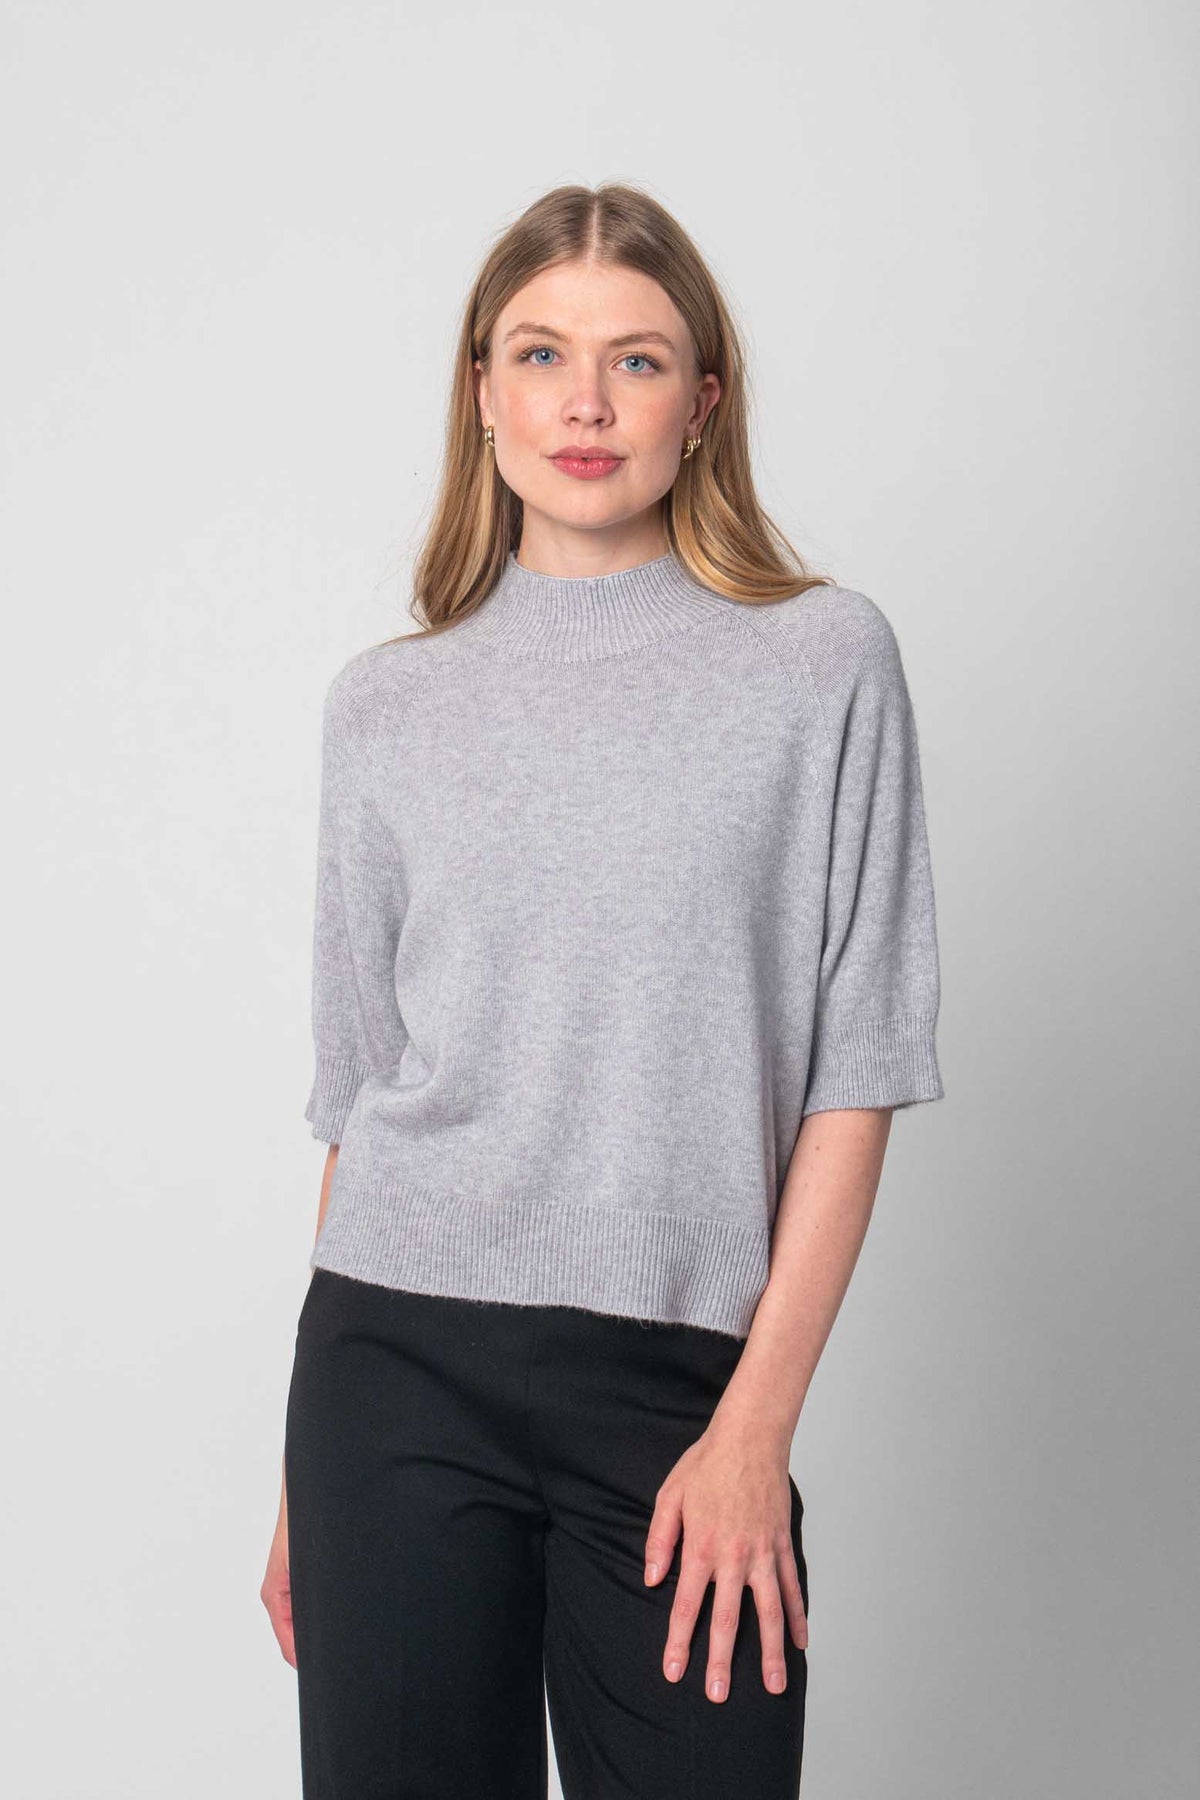 Pullover mit kurzen Ärmeln - Grau